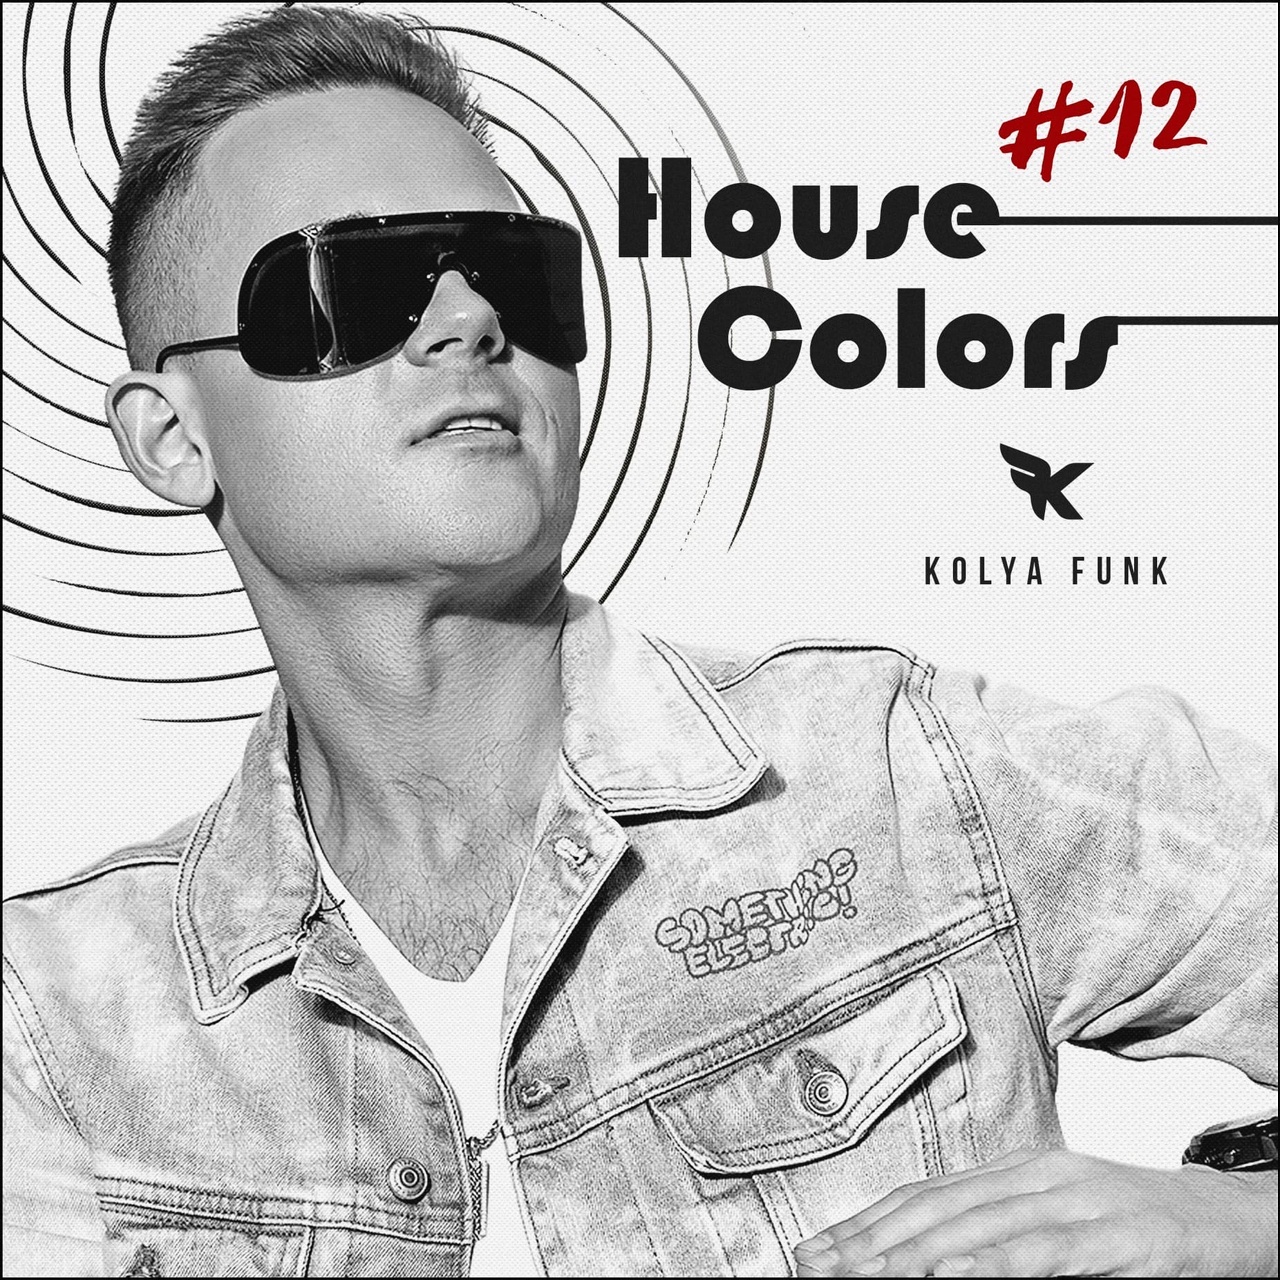 Letöltés Kolya Funk - House Colors #012